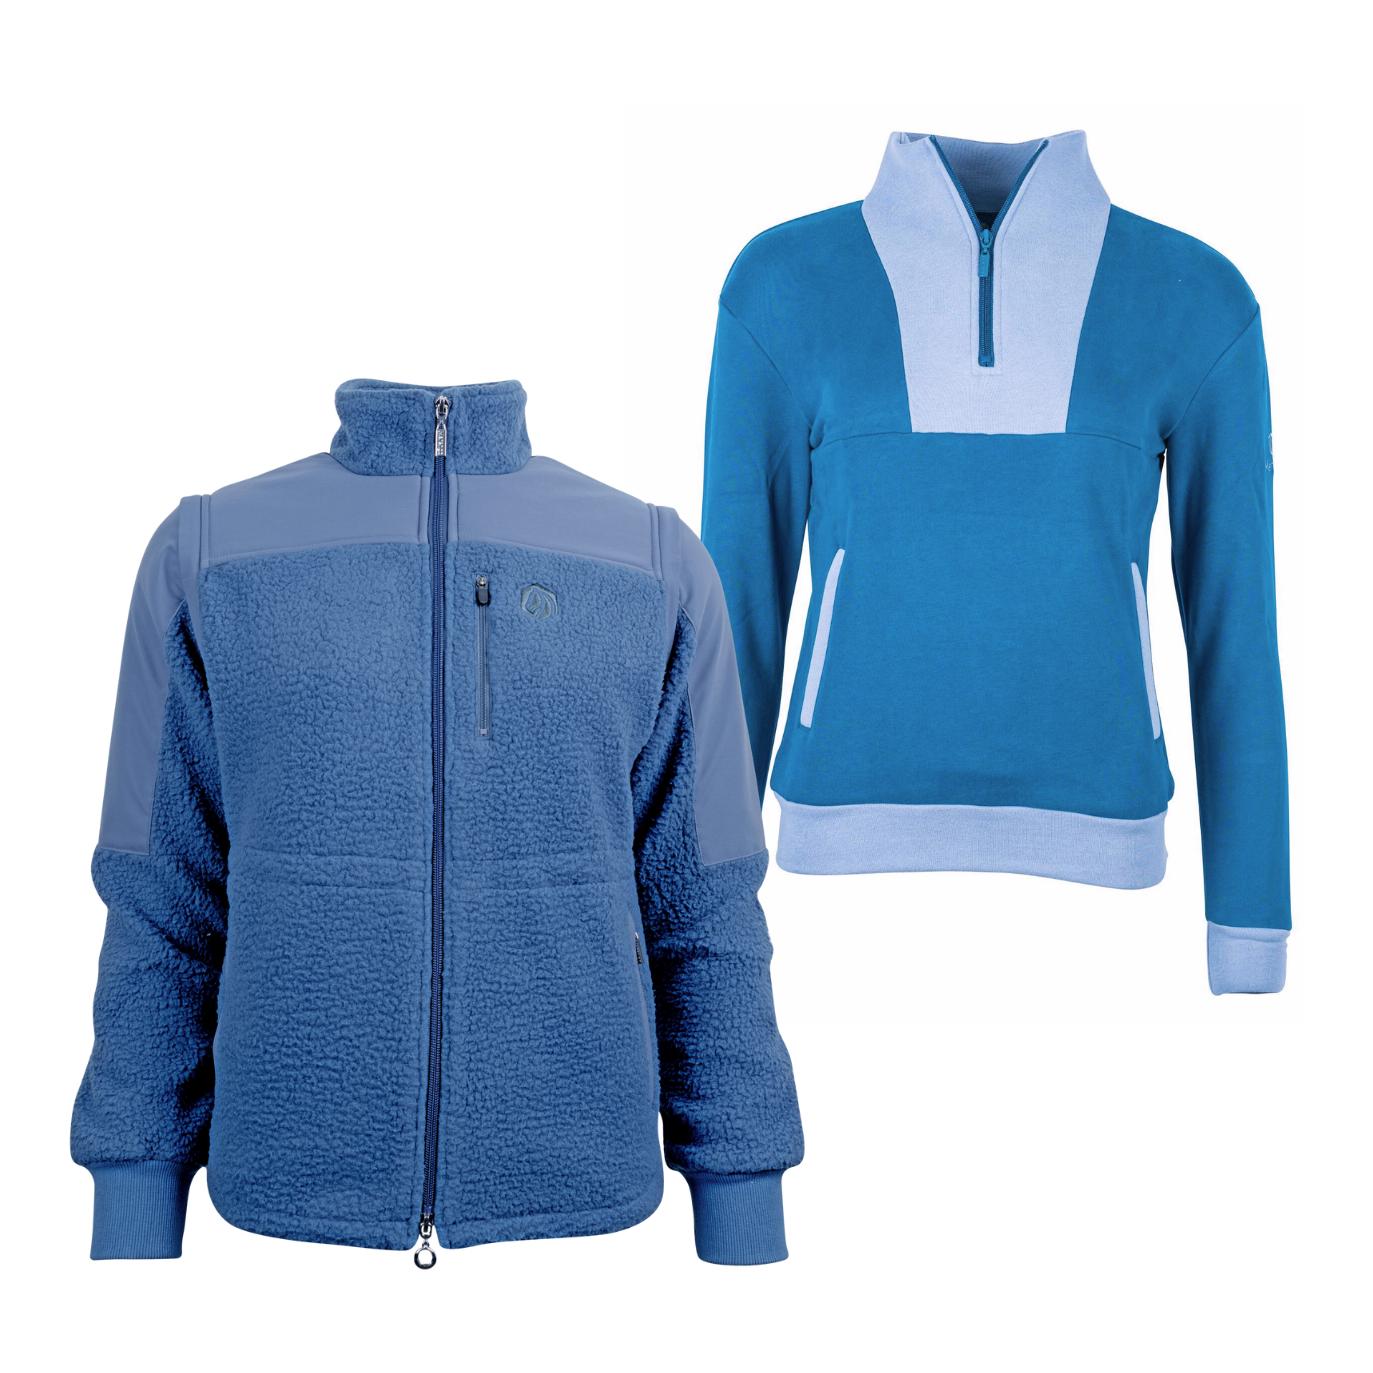 Marengo Outfit-Set Cosy Rides - Teddyfleece-Jacke & Zip Sweatshirt Farbe: Calm Blue / Ocean Blue, Grösse Pullover: M, Grösse Jacke: S von Marengo